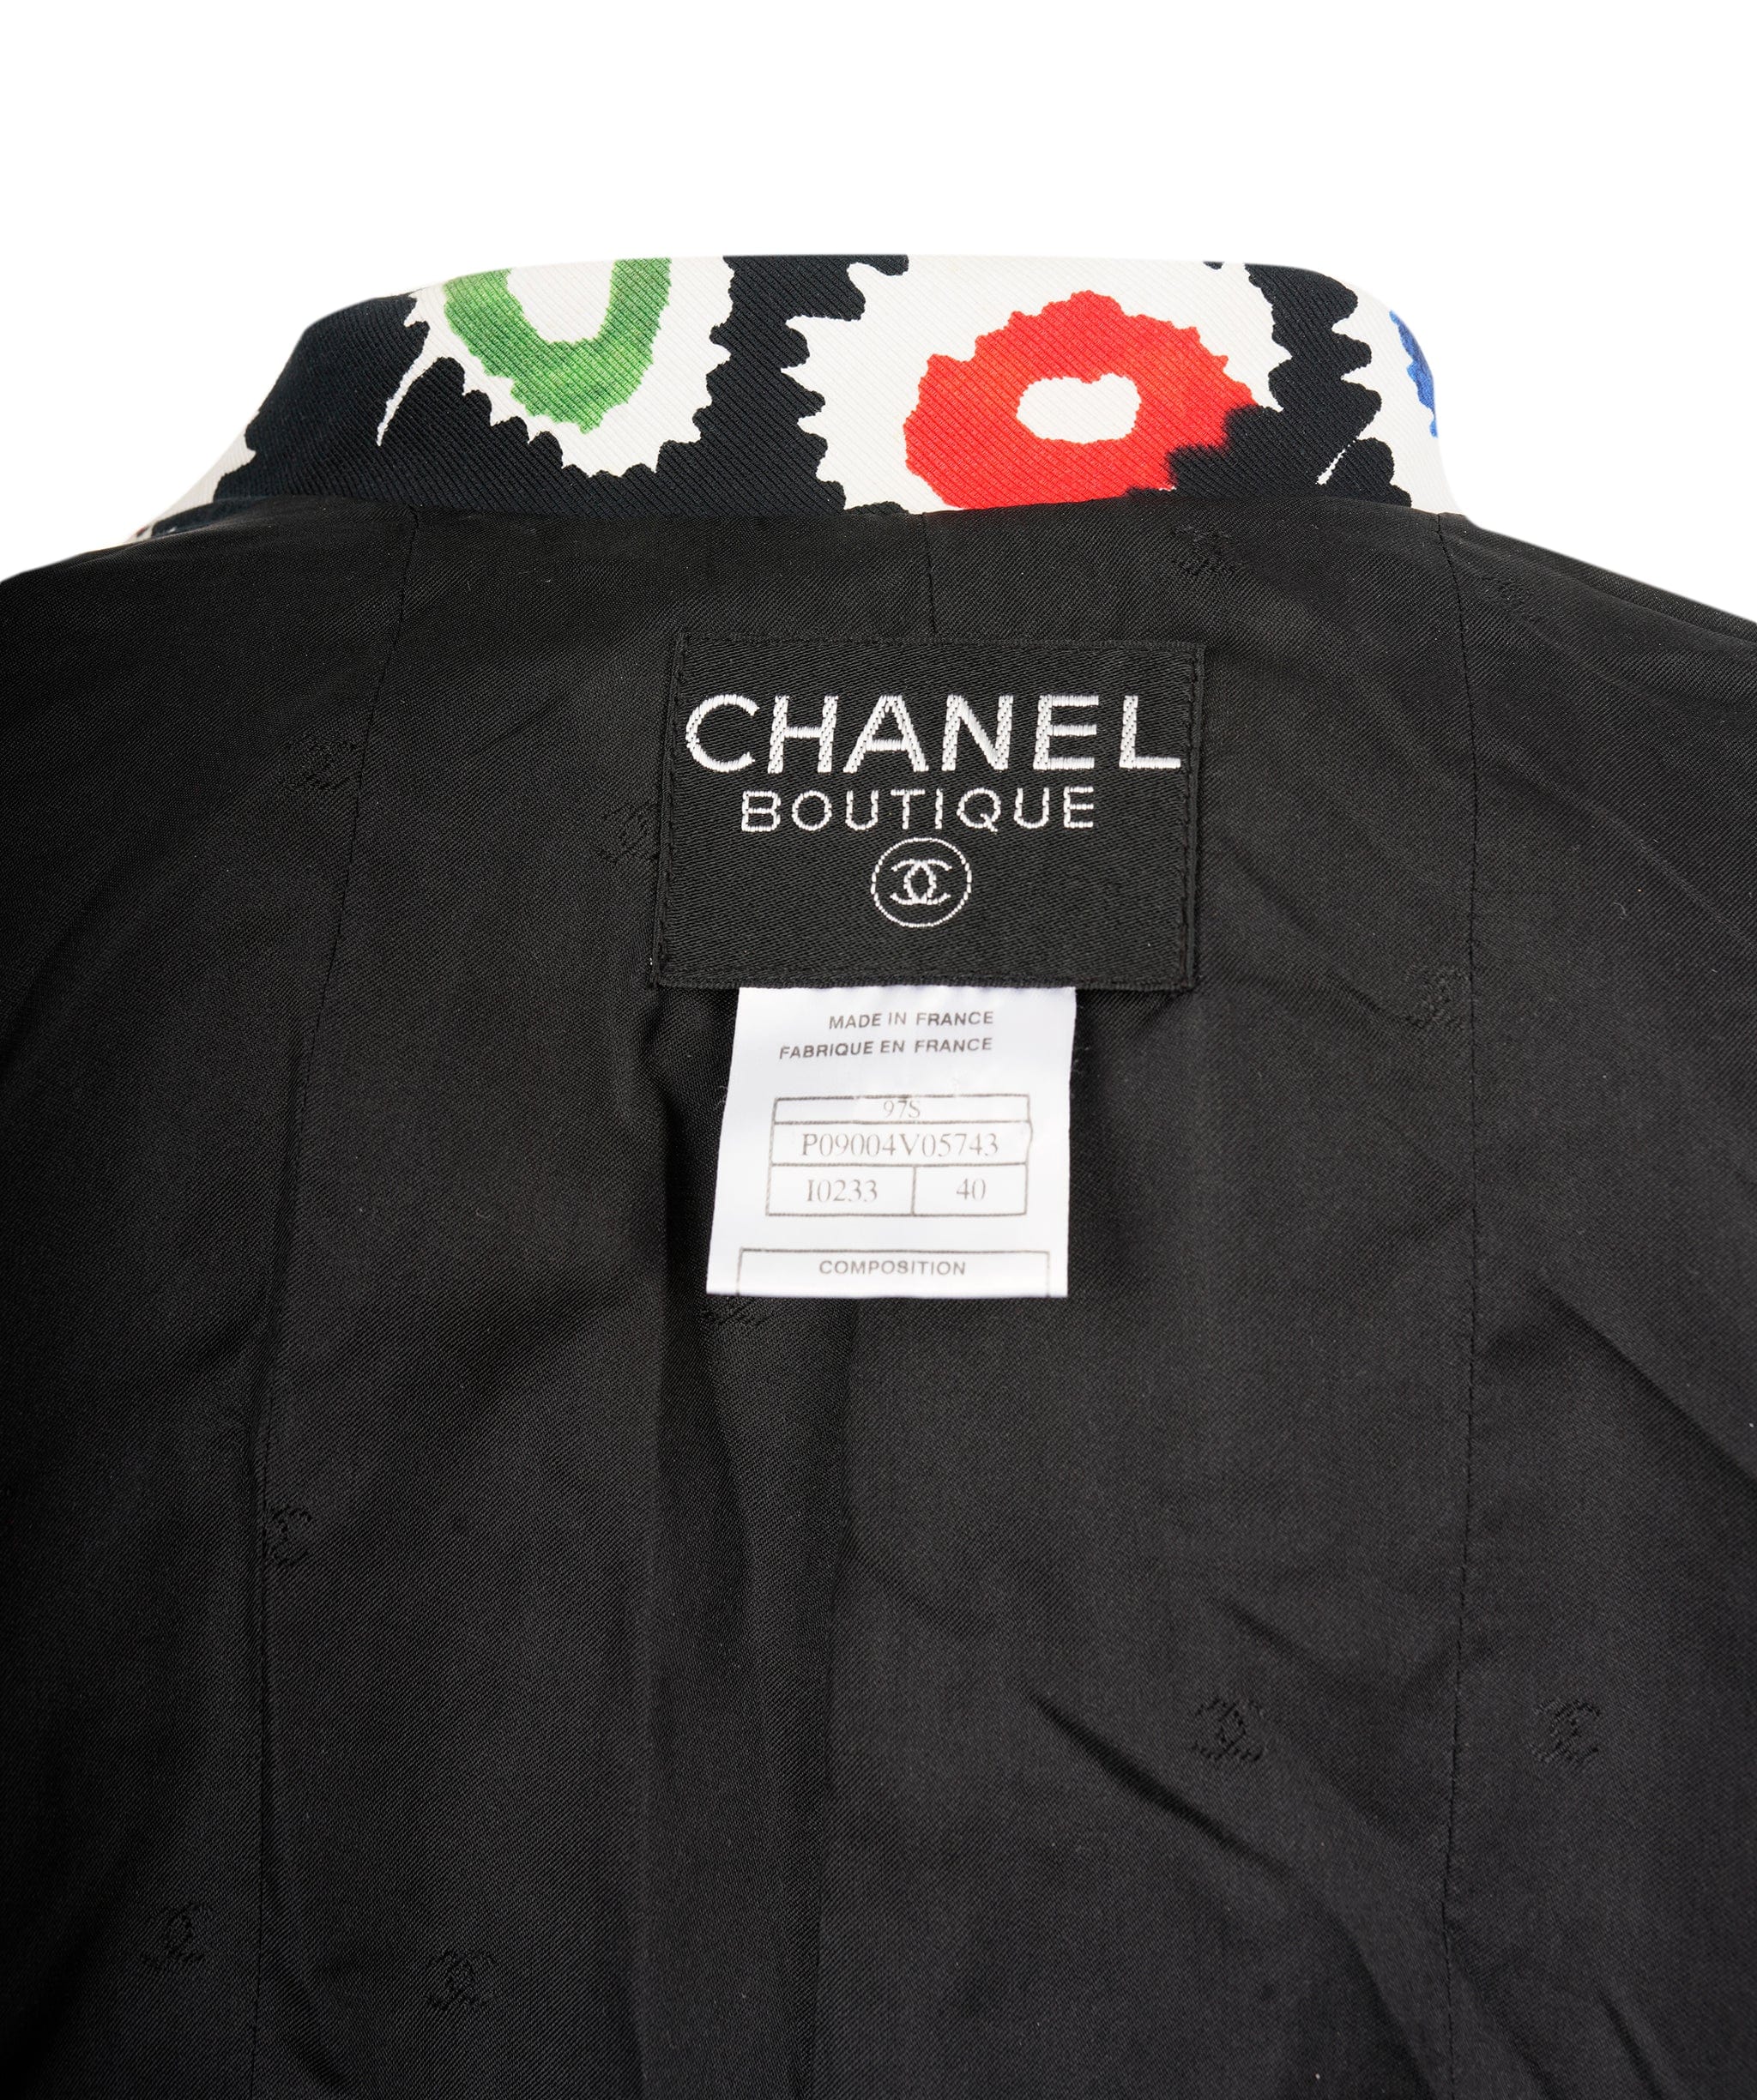 Chanel CHANEL "COCO" LOGO 1997 VINTAGE VIBRANT FLOWER LOGO JACKET - ASL4071